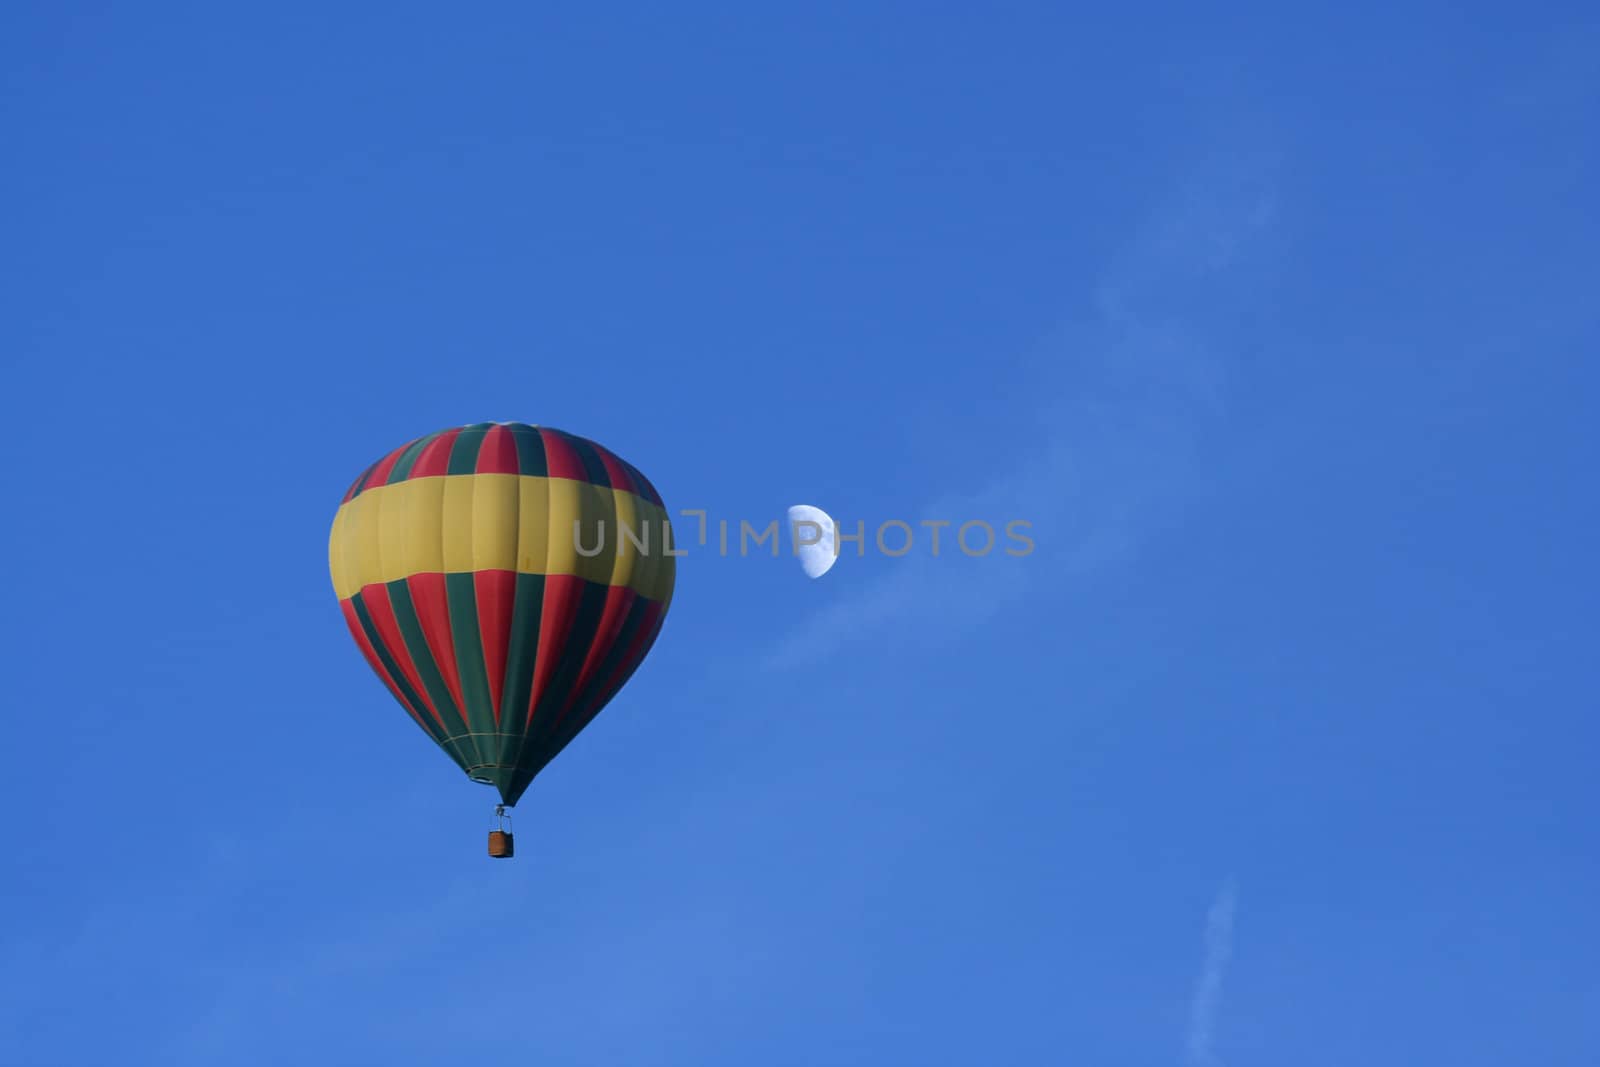 a Hot air balloon